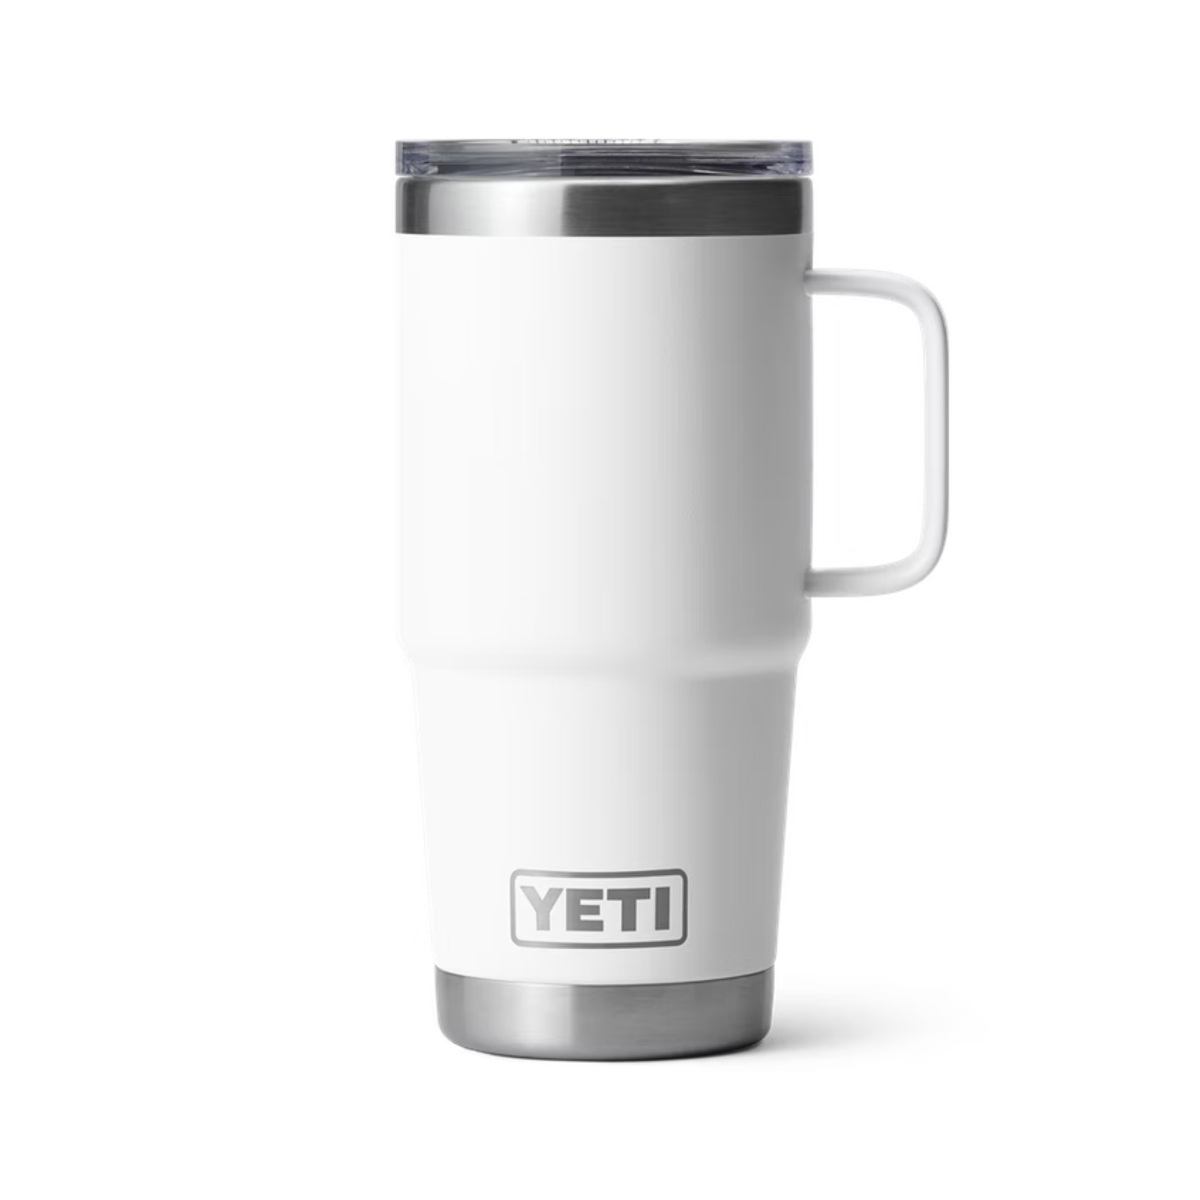 Yeti rambler 20oz travel mug in white